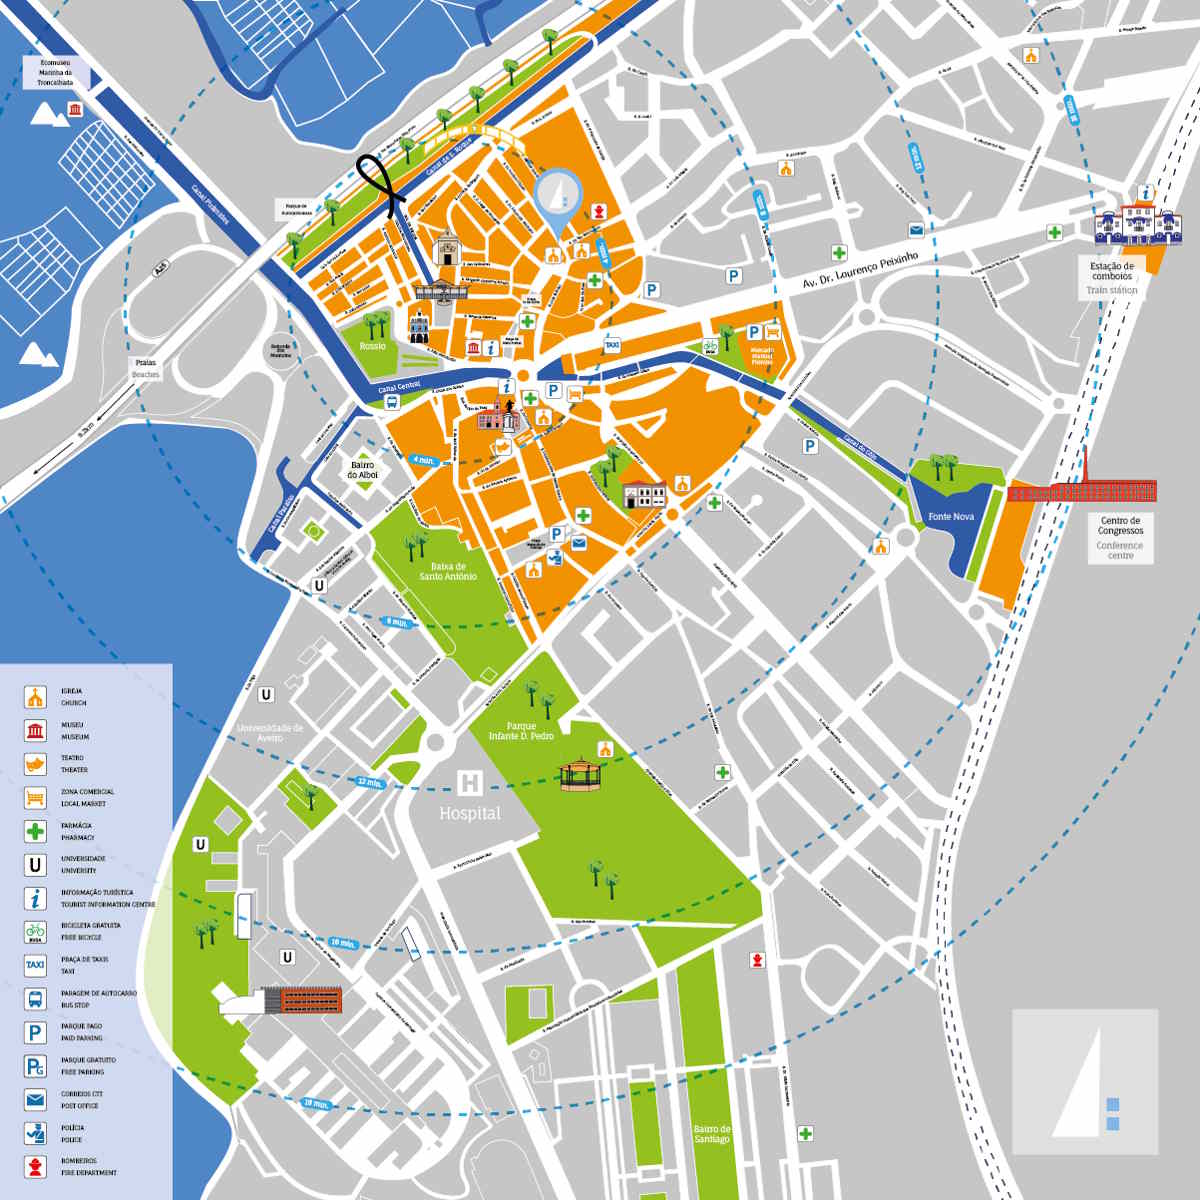 Cartina e mappa turistica per organizzare le escursioni ad Aveiro in Portogallo